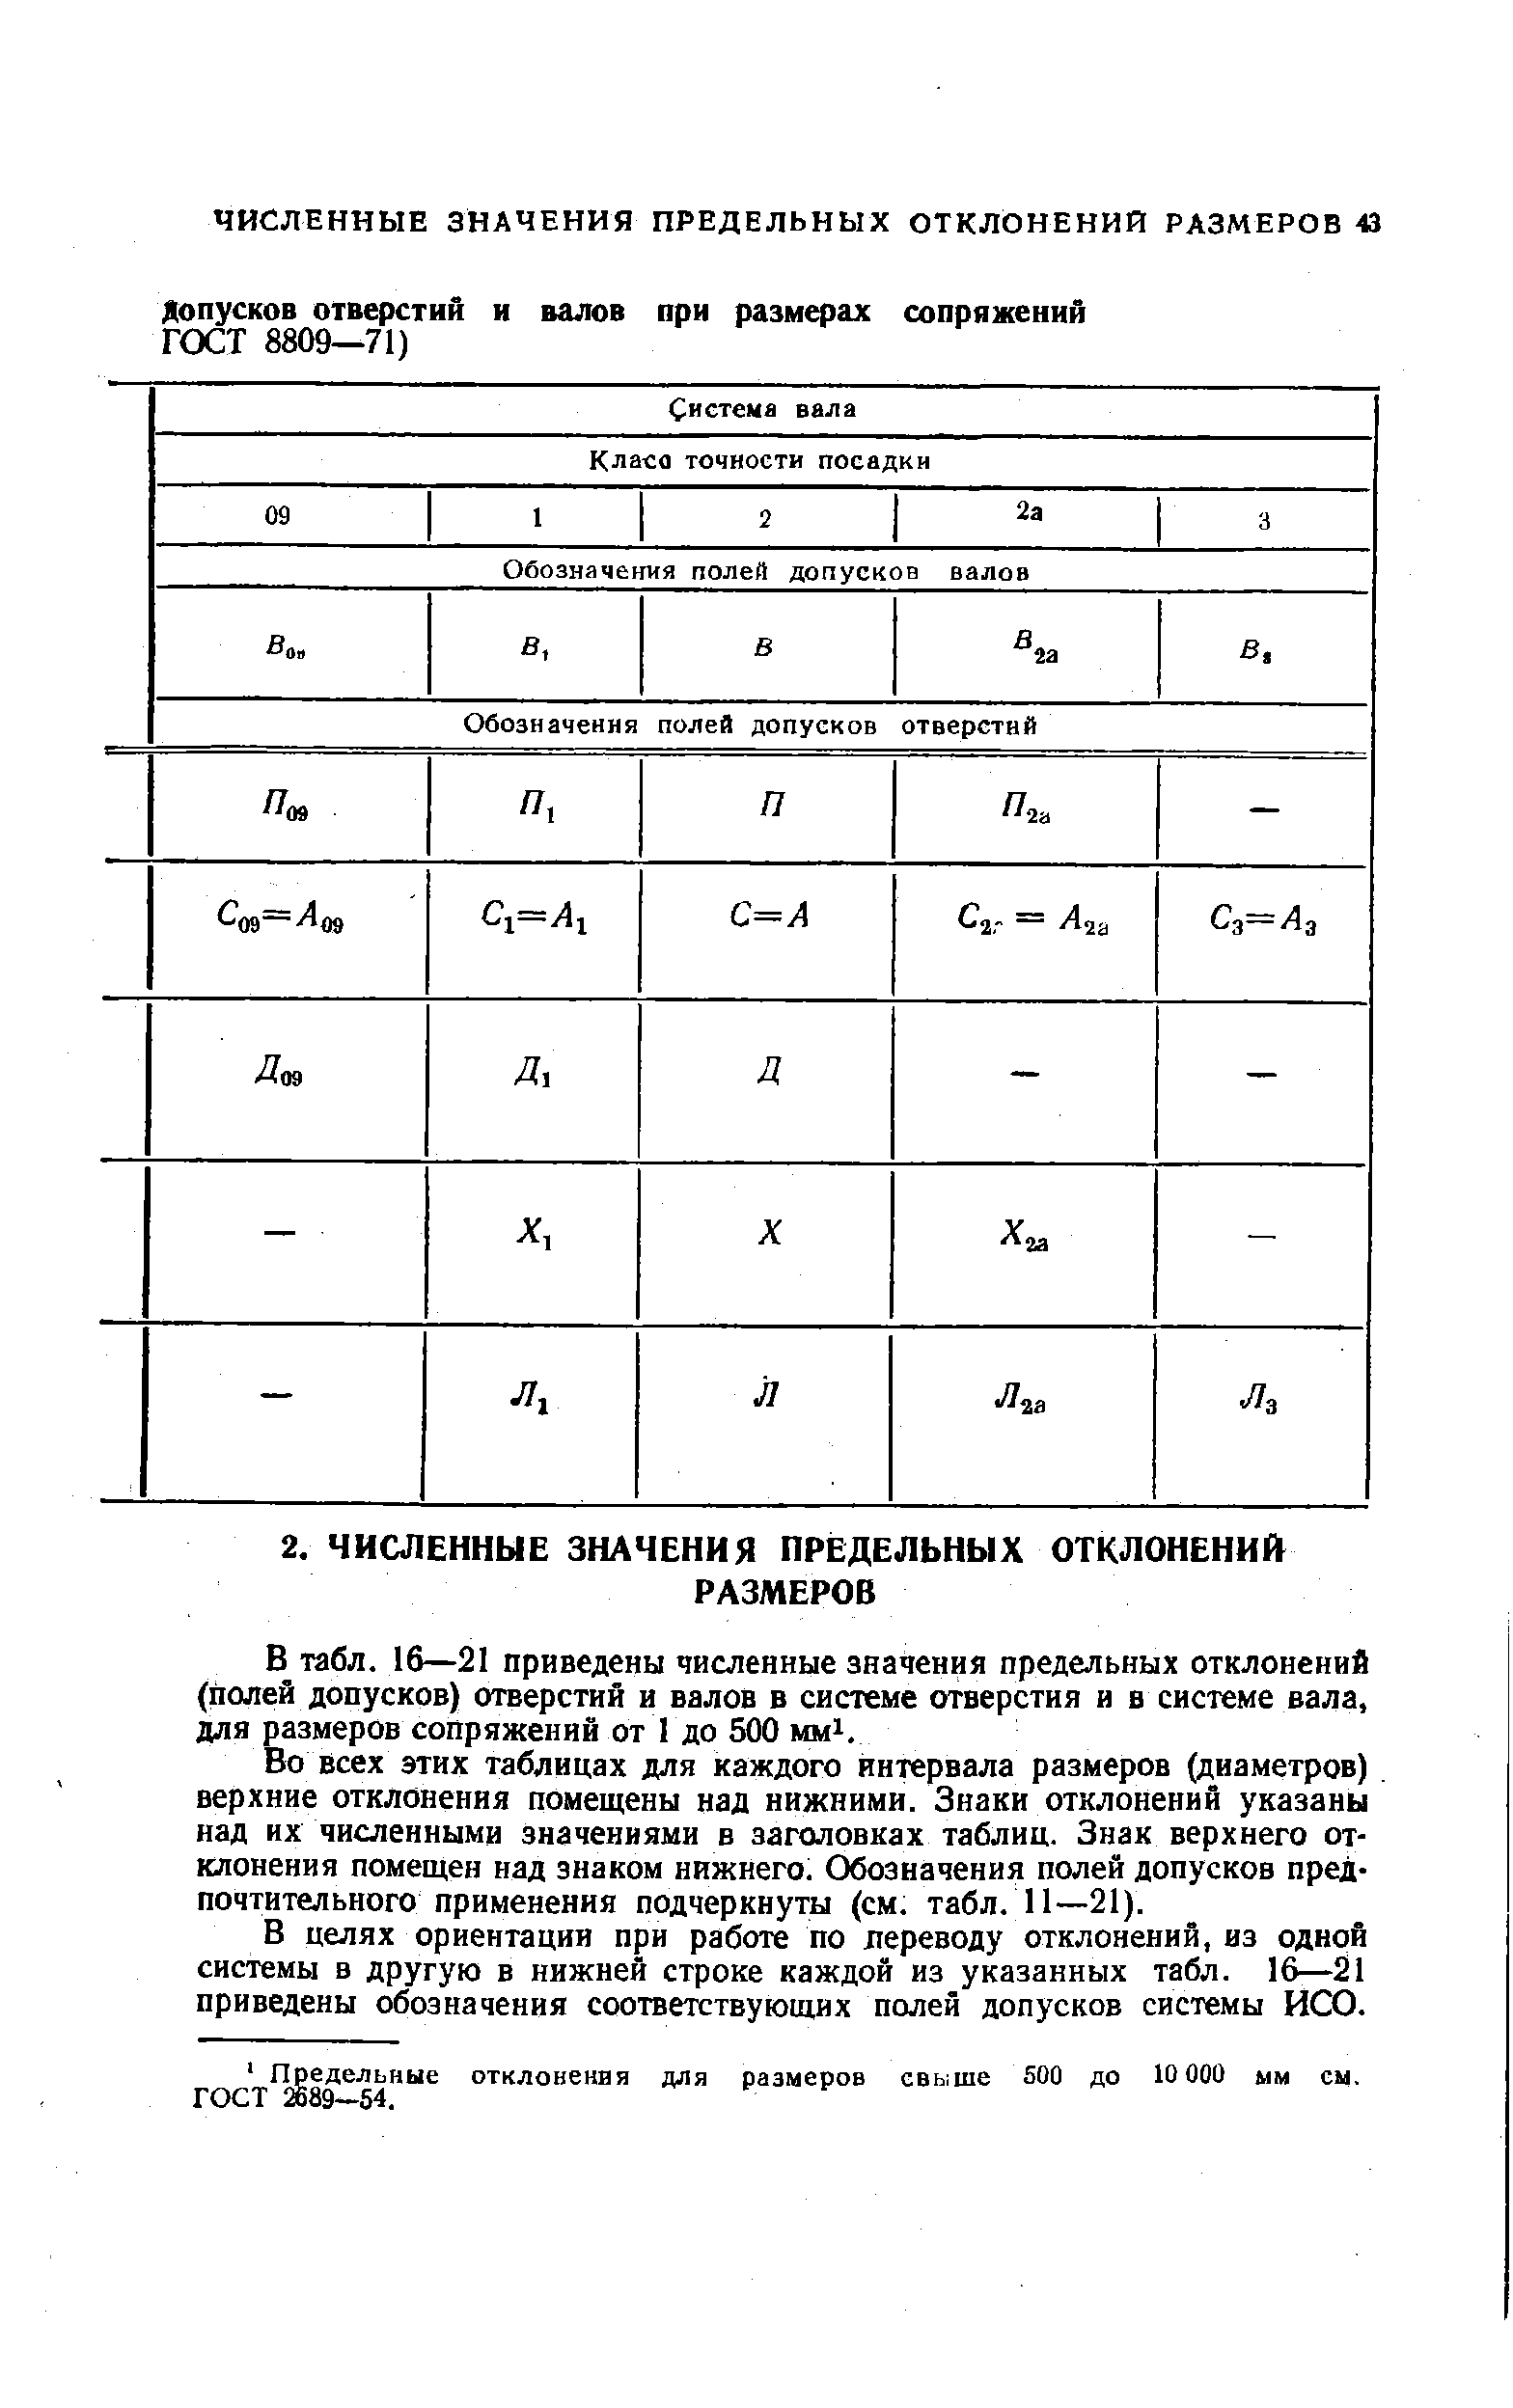 В табл. 16—21 приведены численные значения предельных отклонений (полей допусков) отверстий и валов в системе отверстия и в системе вала, для размеров сопряжений от 1 до 500 mmi.
